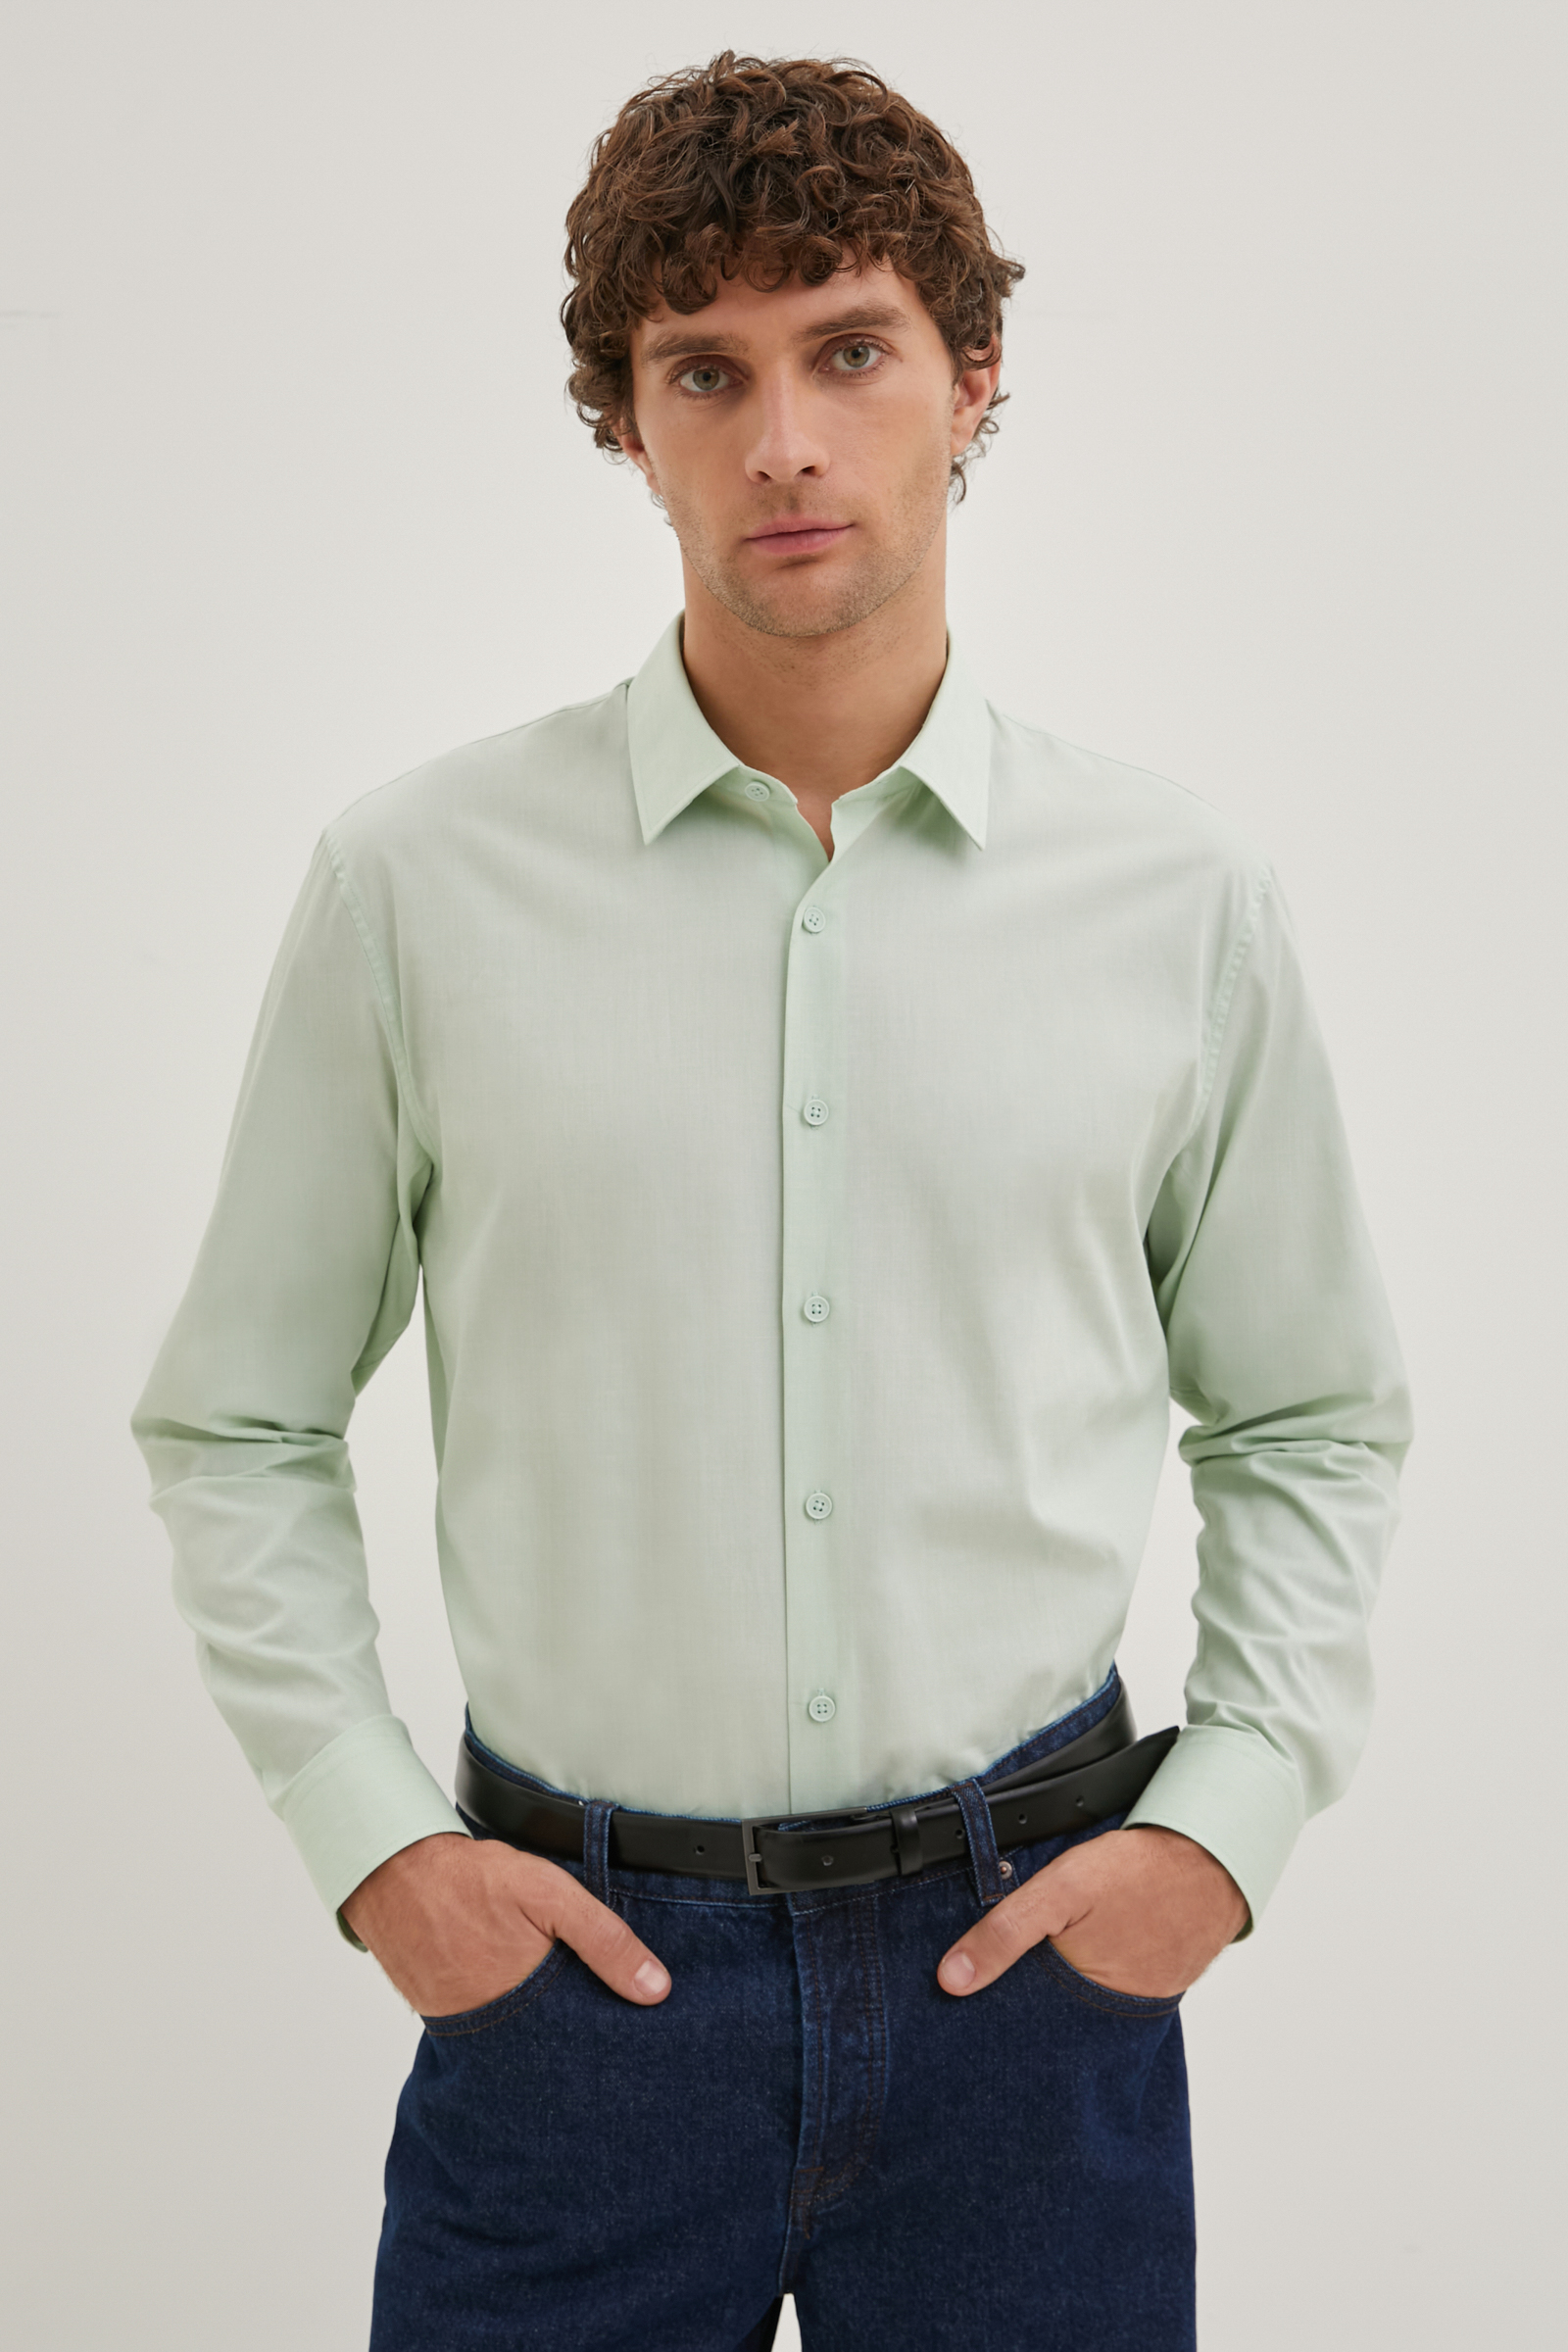 Рубашка мужская Finn Flare FBE21045 зеленая M